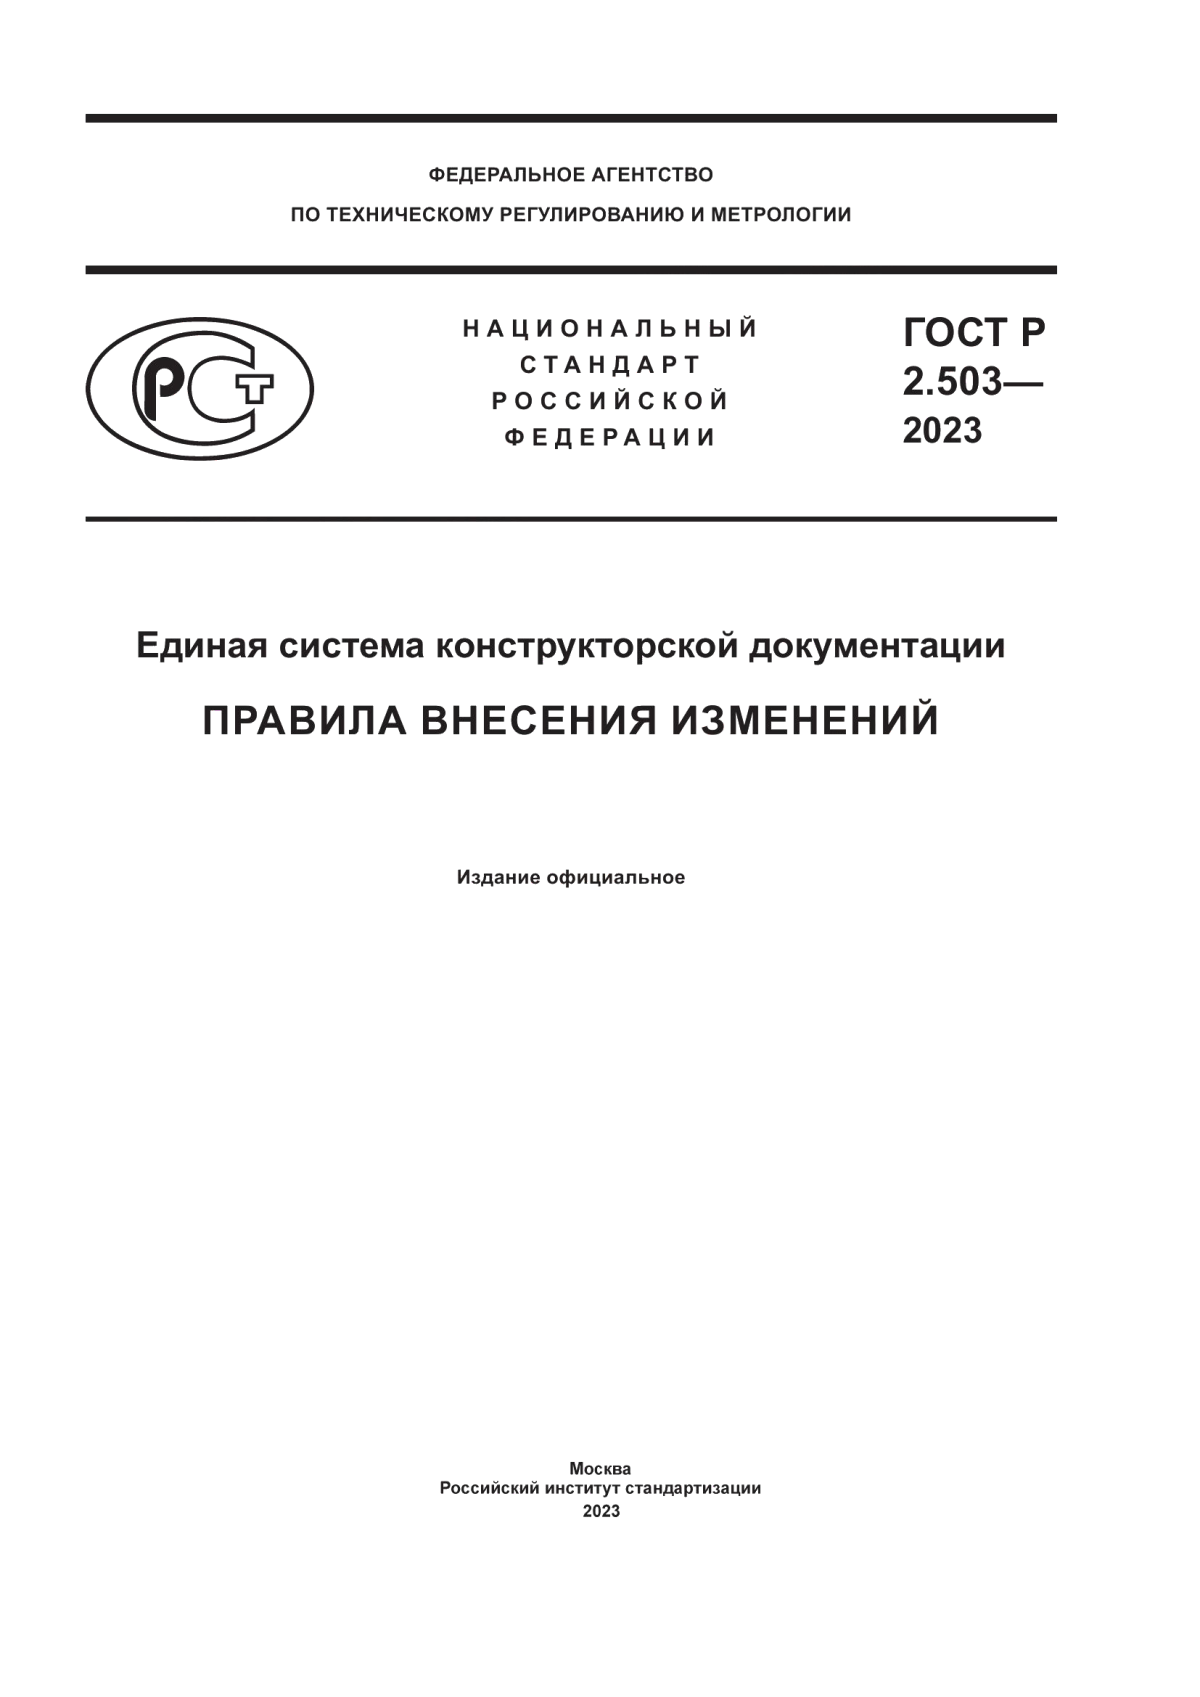 ГОСТ Р 2.503-2023 Единая система конструкторской документации. Правила внесения изменений